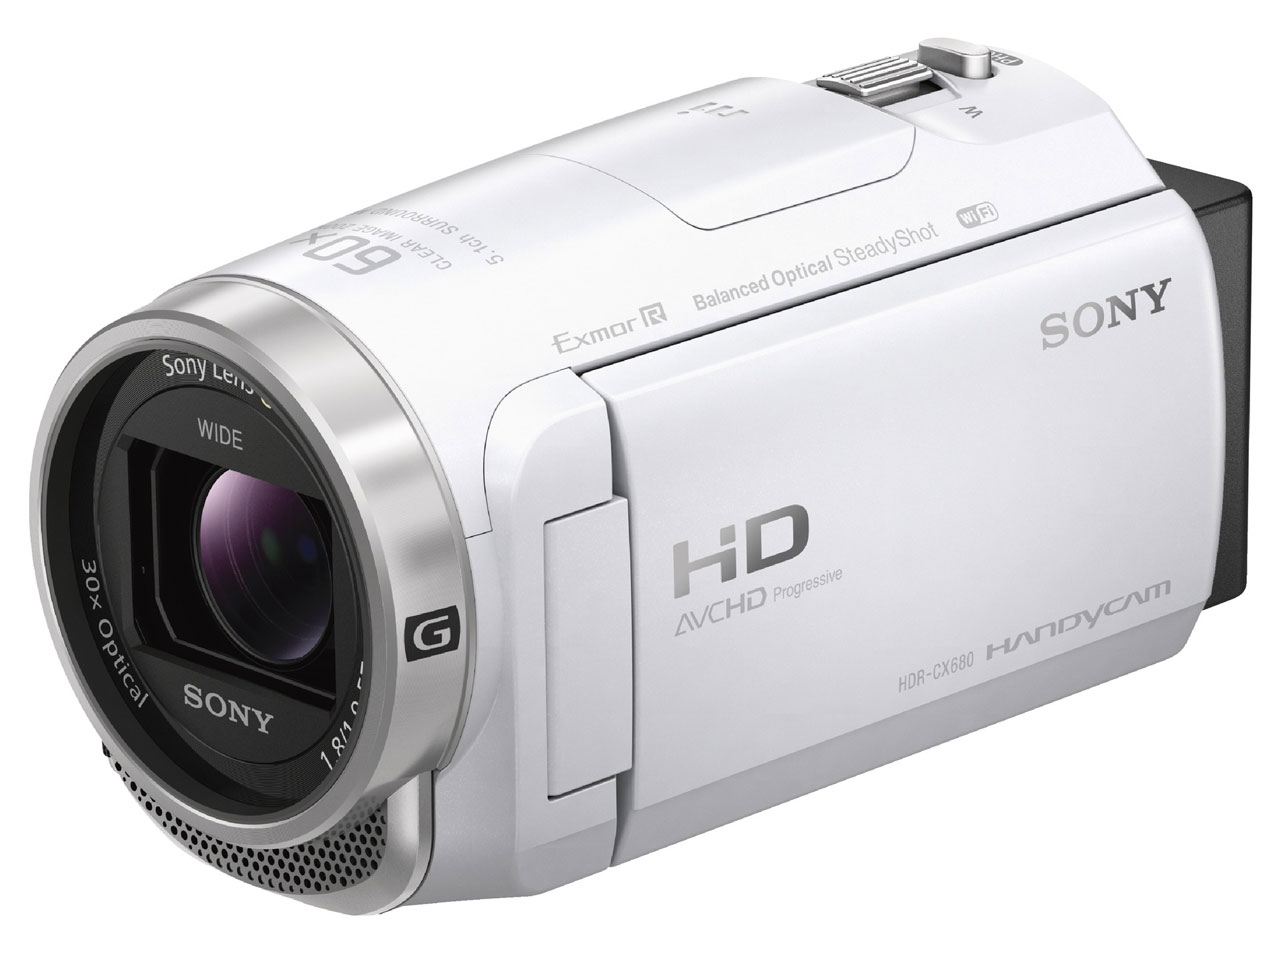 【在庫あり・送料無料】SONY デジタルビデオカメラ HDR-CX680 [ホワイト]